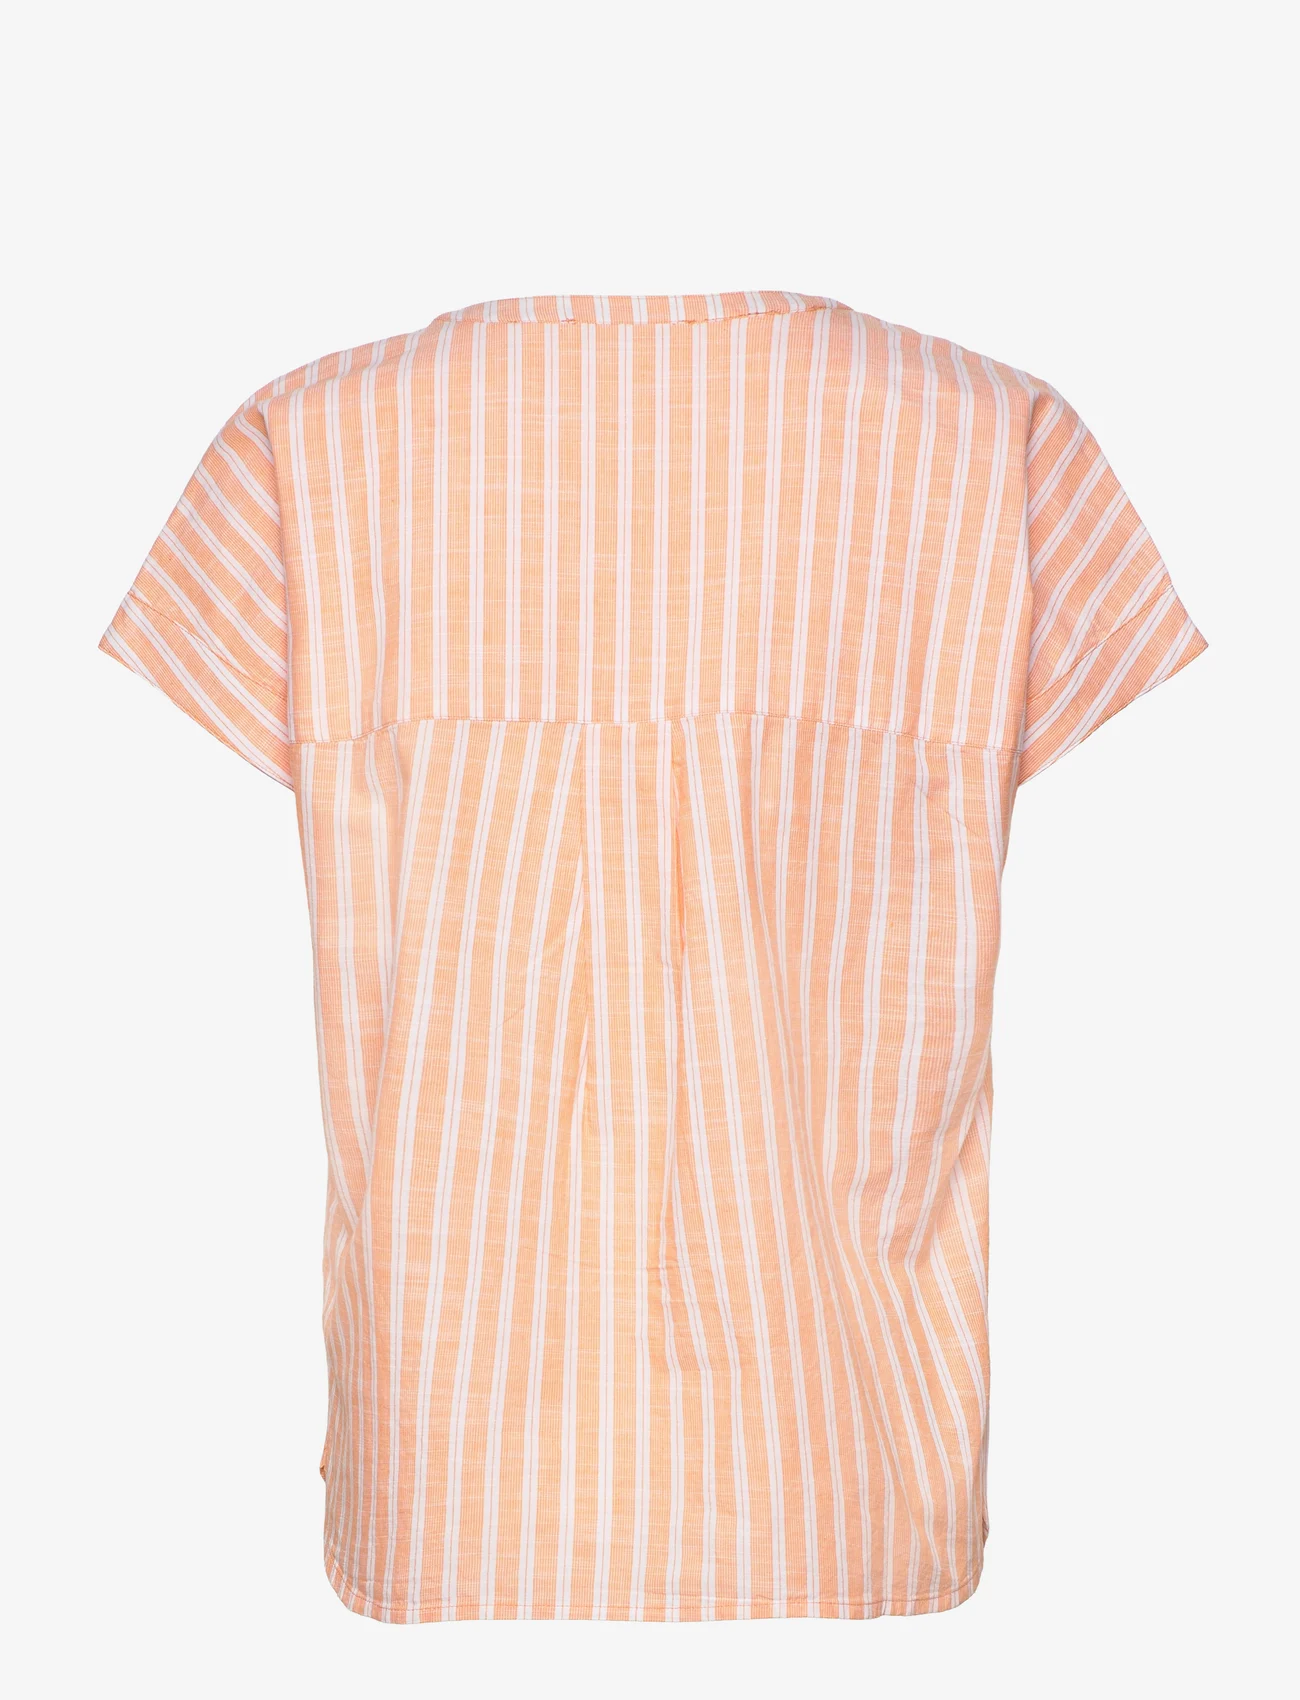 Esprit Casual - Striped cotton blouse - kortærmede bluser - orange 3 - 1